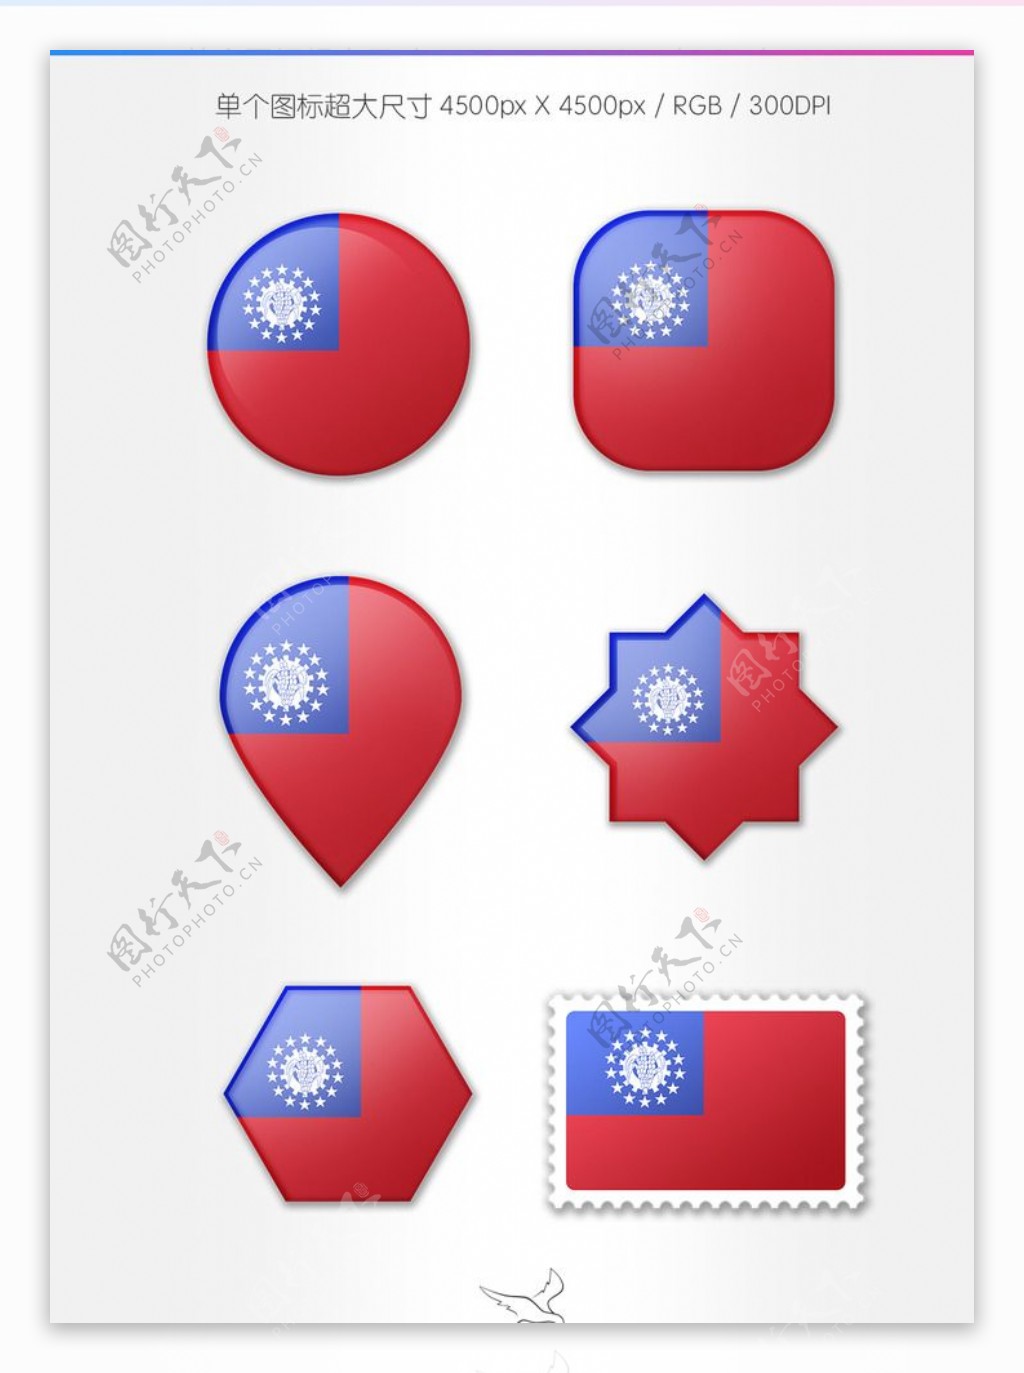 缅甸国旗图标